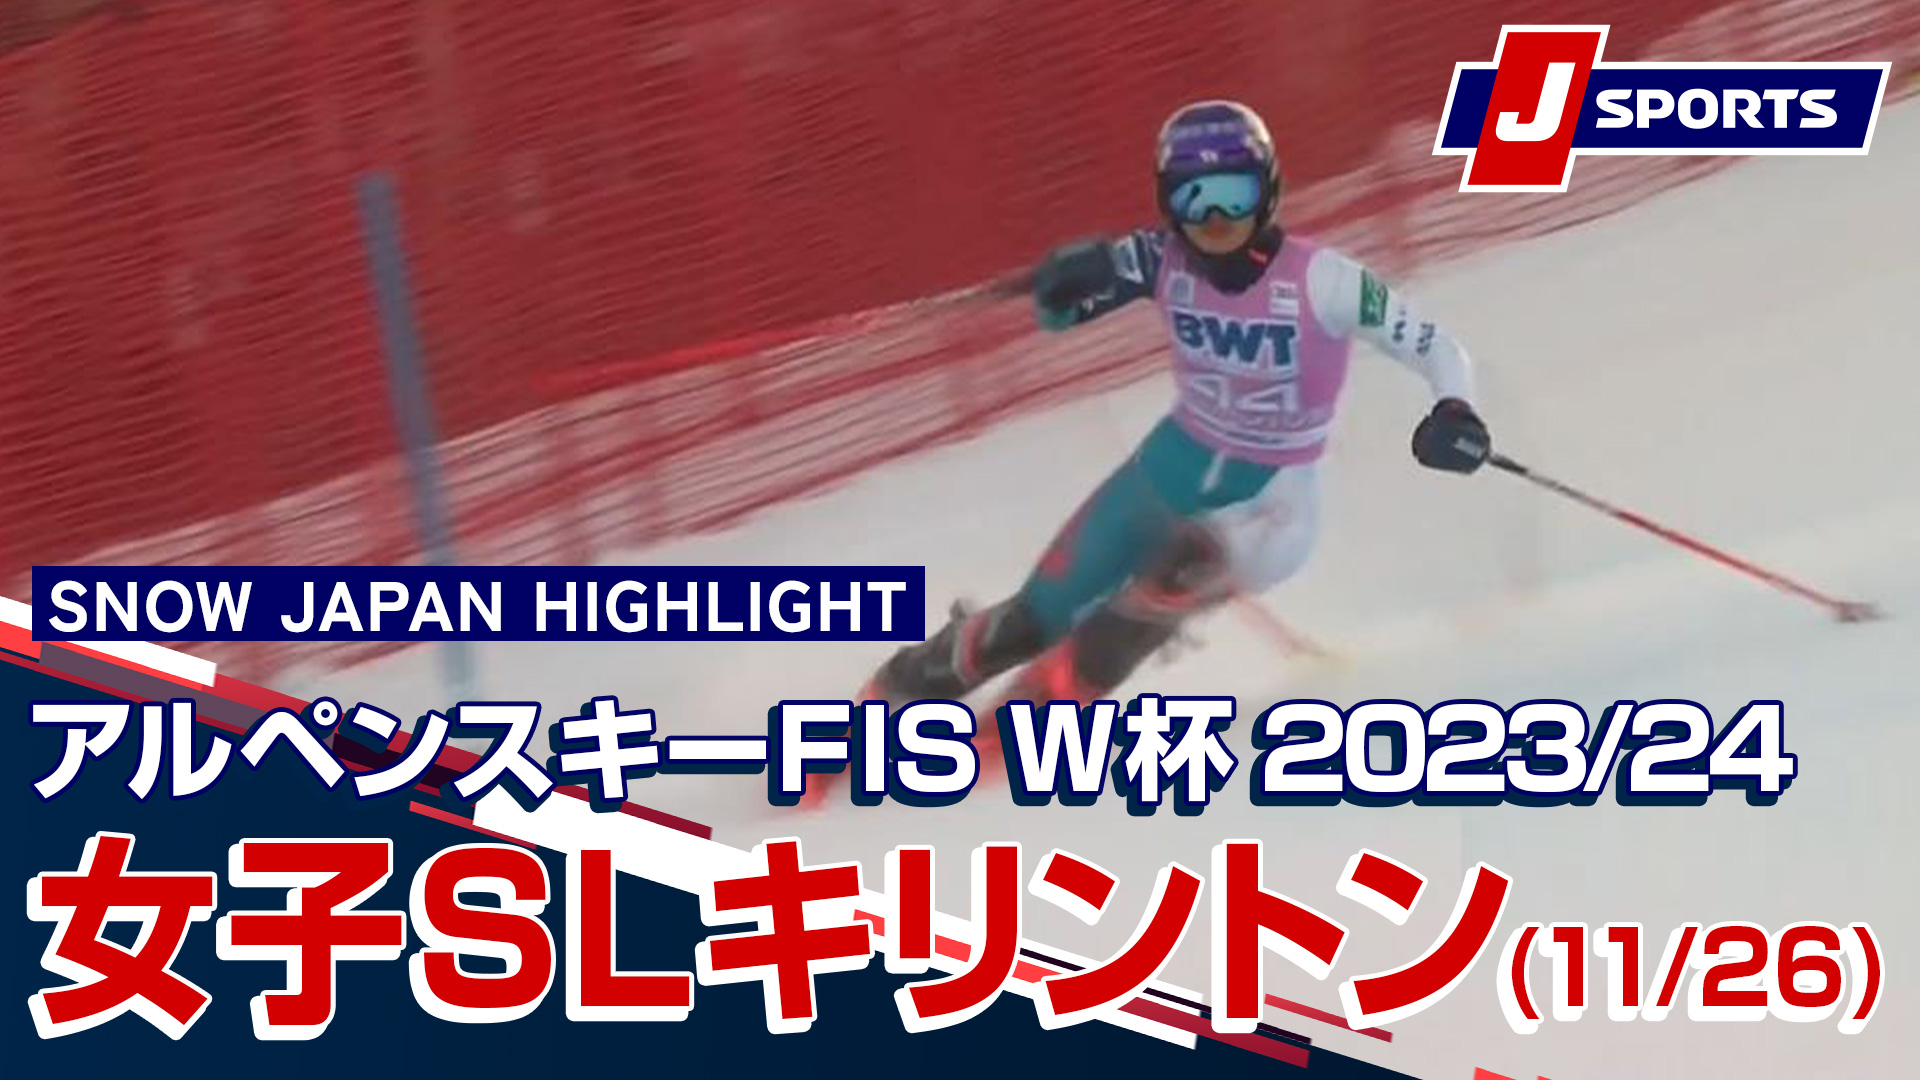 【SNOW JAPAN HIGHLIGHT 2023_24】アルペンスキー FIS ワールドカップ 2023_24  女子 スラローム キリントン大会 (11_26)